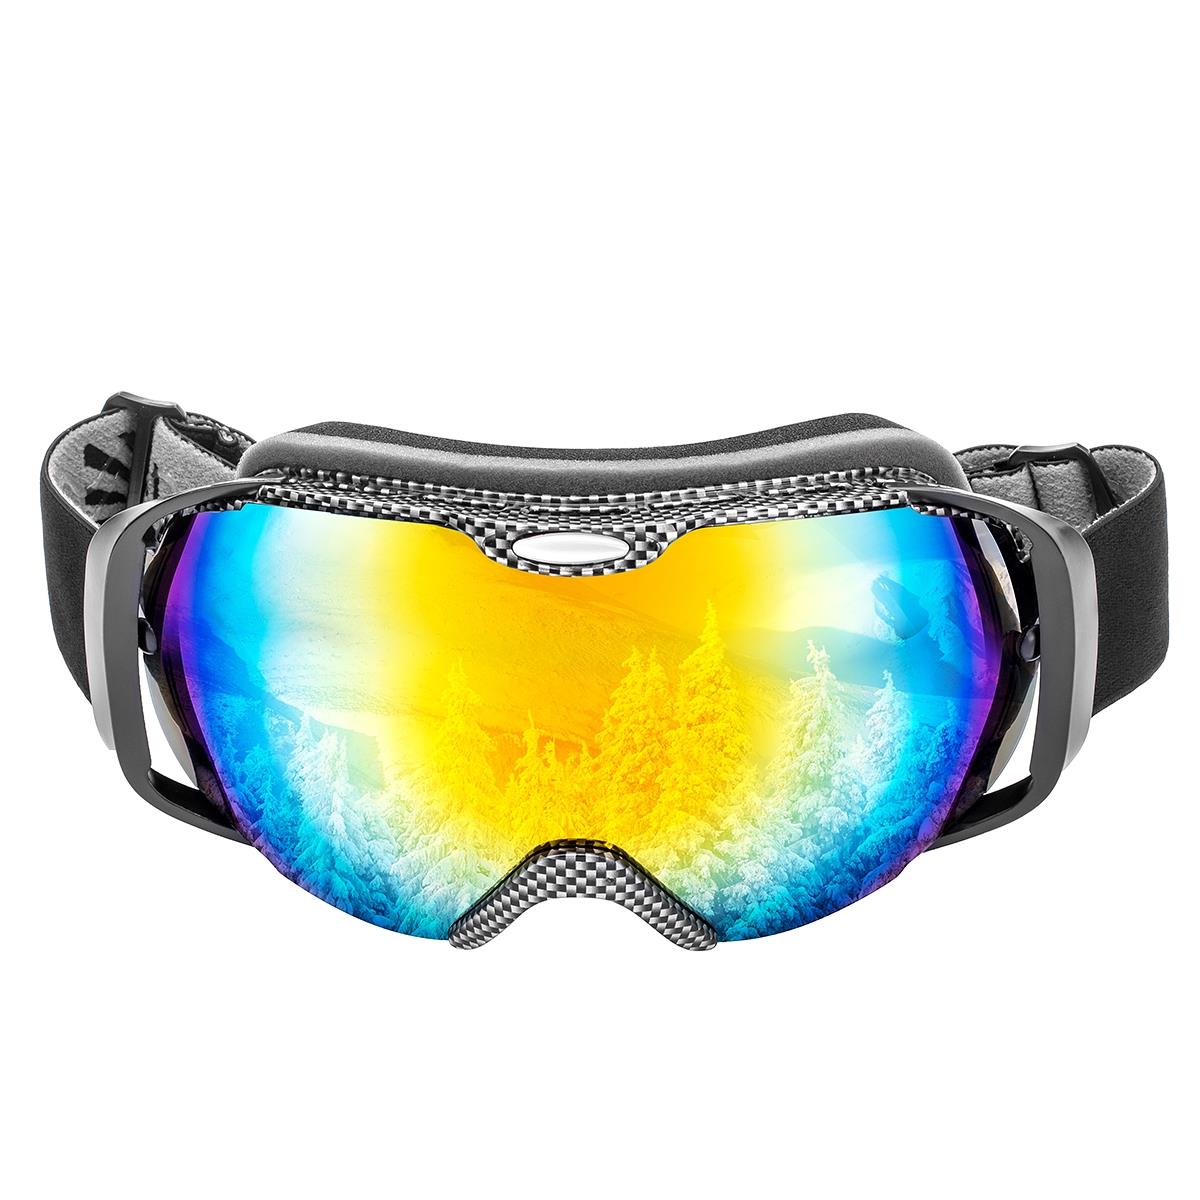 Очки горнолыжные HS-HX-012 Helios очки для плавания взрослые uv защита